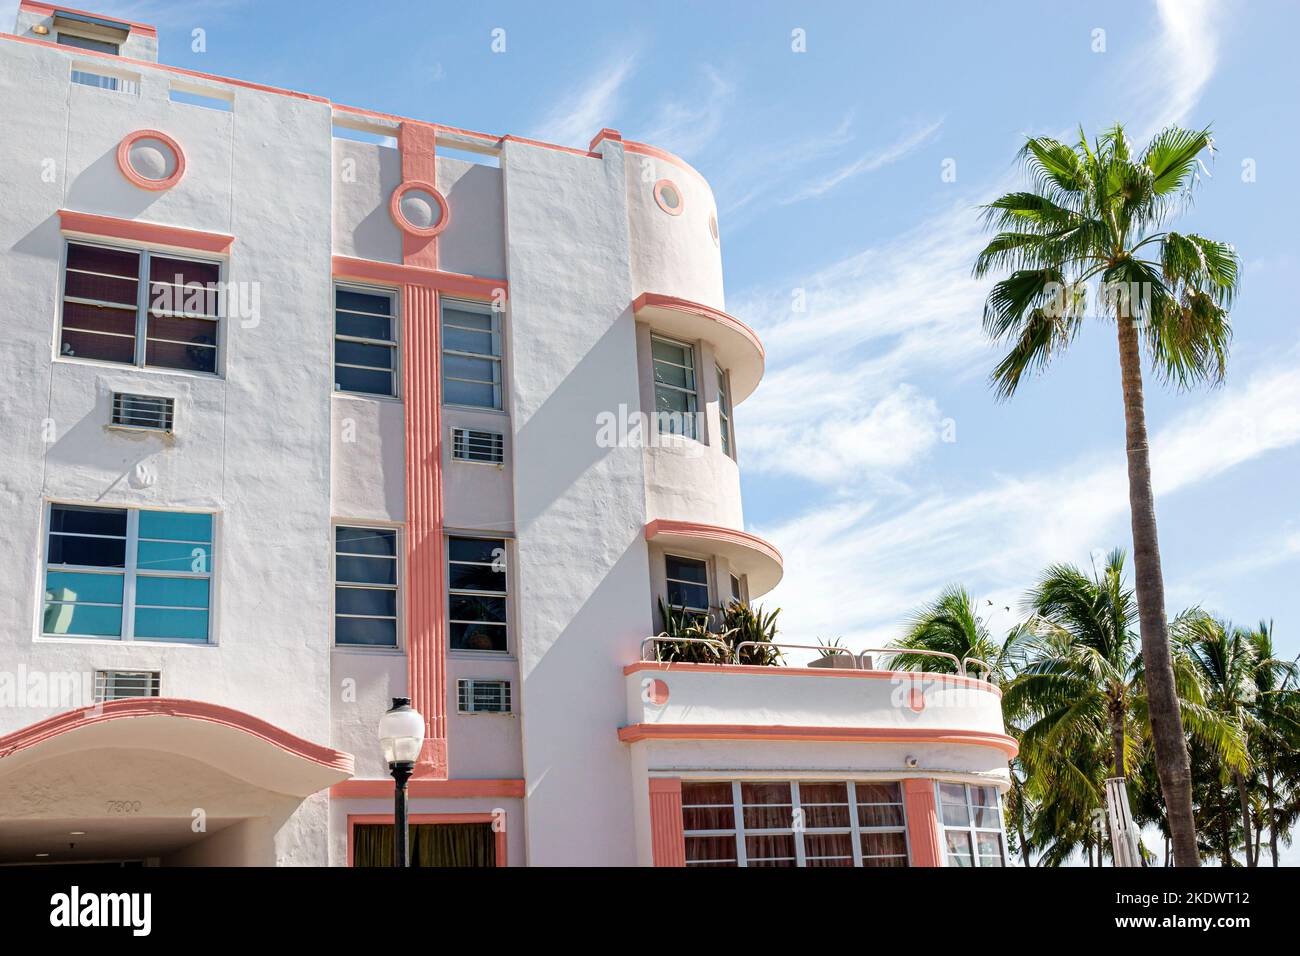 Miami Beach Florida, North Beach 7300 Ocean Terrace Eigentumswohnung Eigentumswohnung Gebäude Art déco-Stil außen Vordereingang Gebäude Gebäude Stor Stockfoto